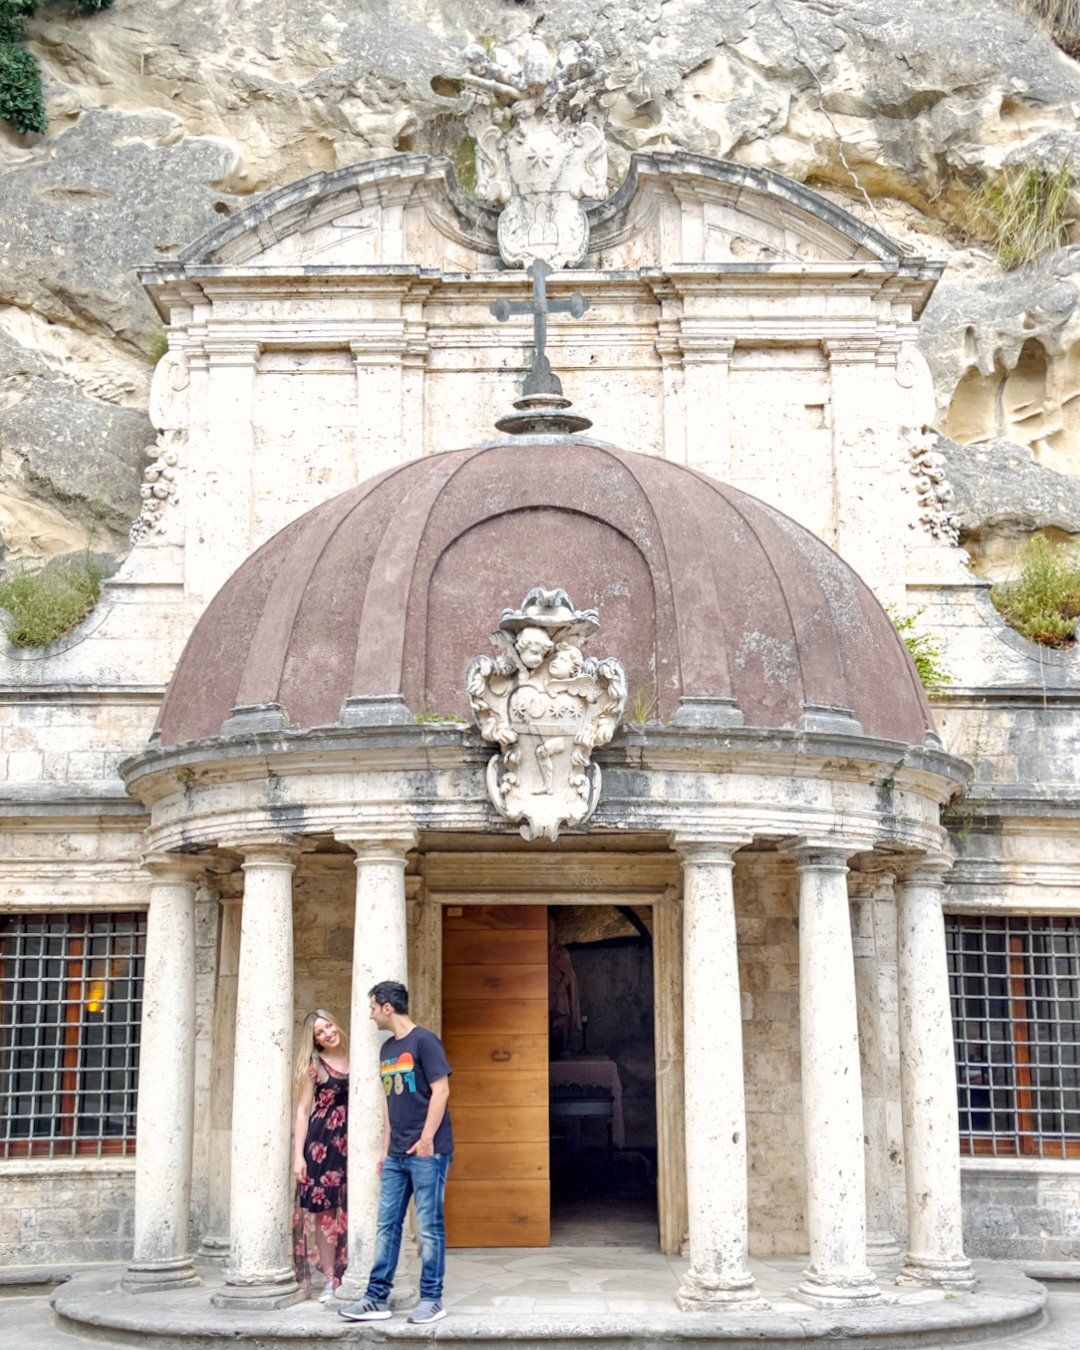 Tempietto di Sant'Emidio alle grotte